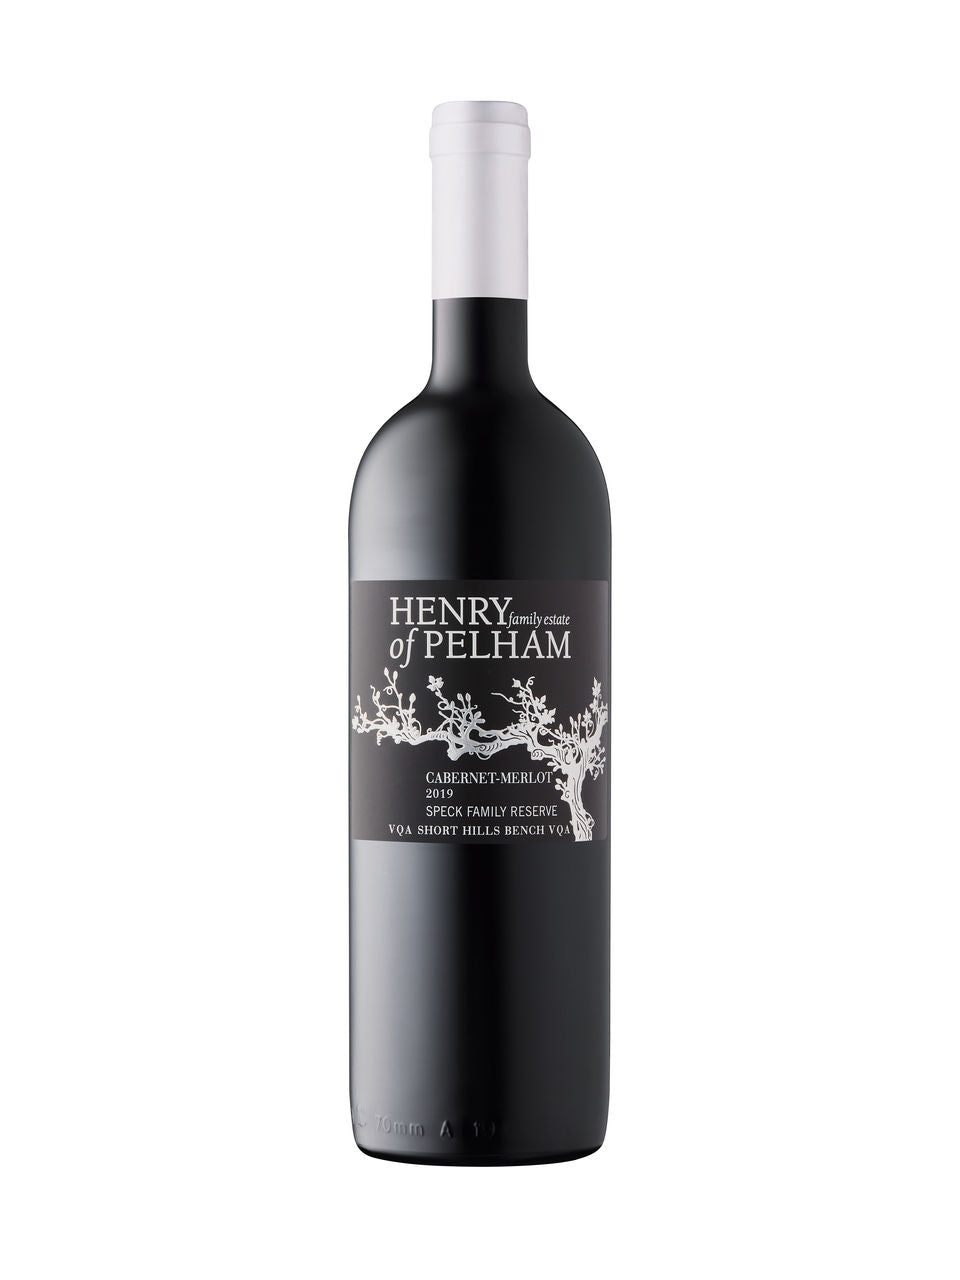 Henry of Pelham Speck Family Reserve Cabernet/Merlot 2019 750 ml bottle VINTAGES